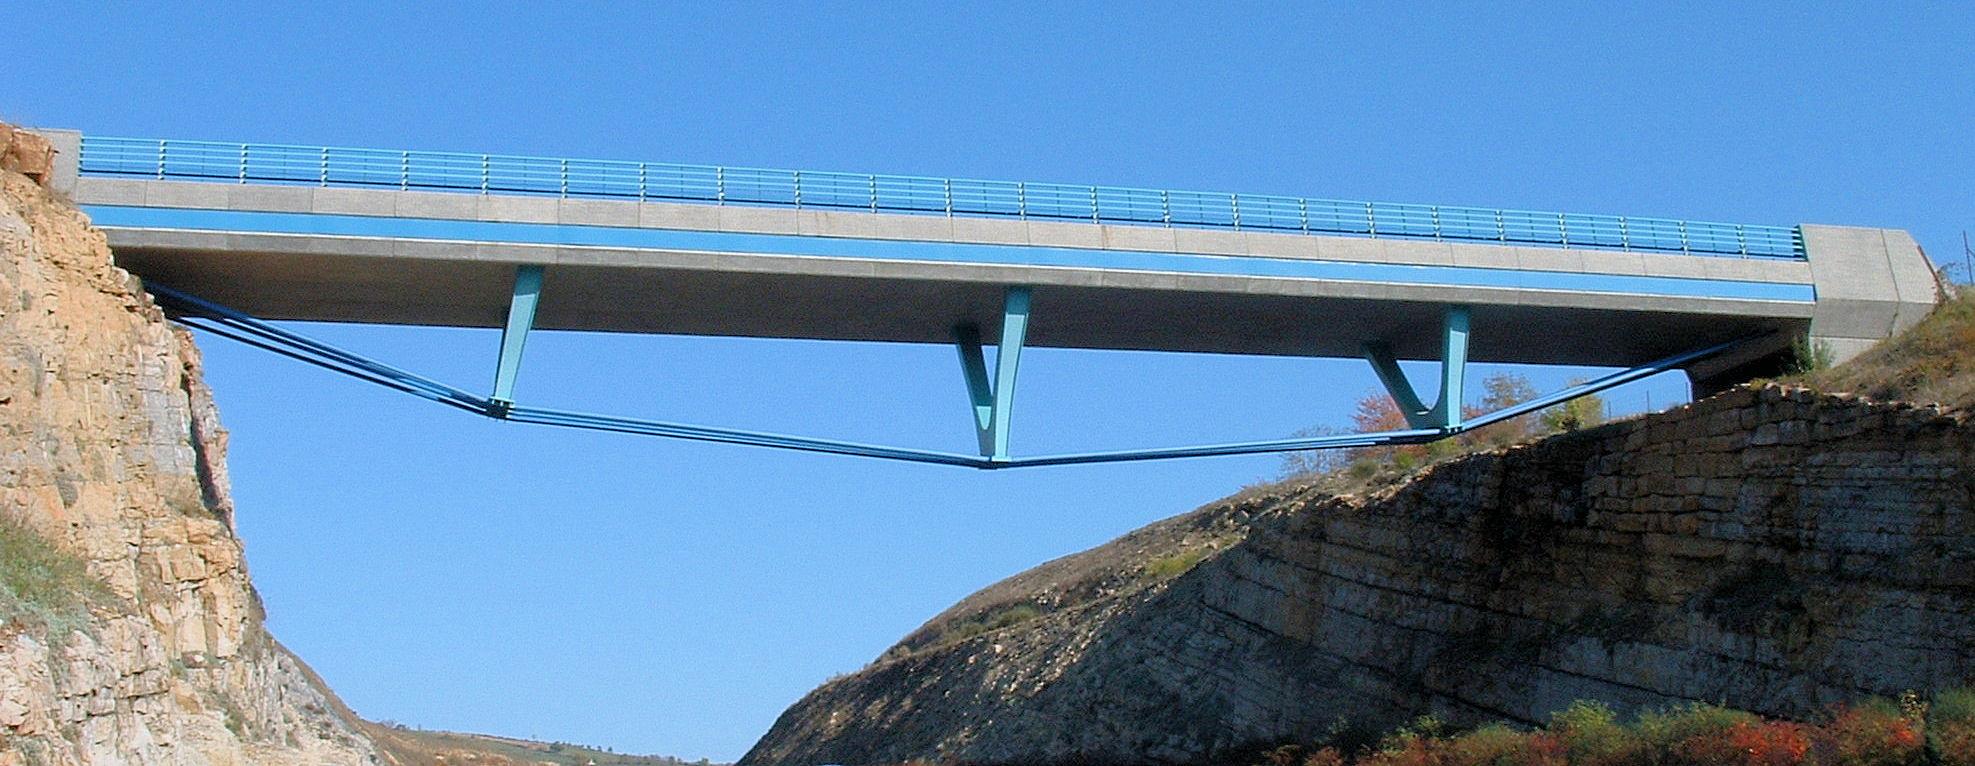 上承式桁架桥图片